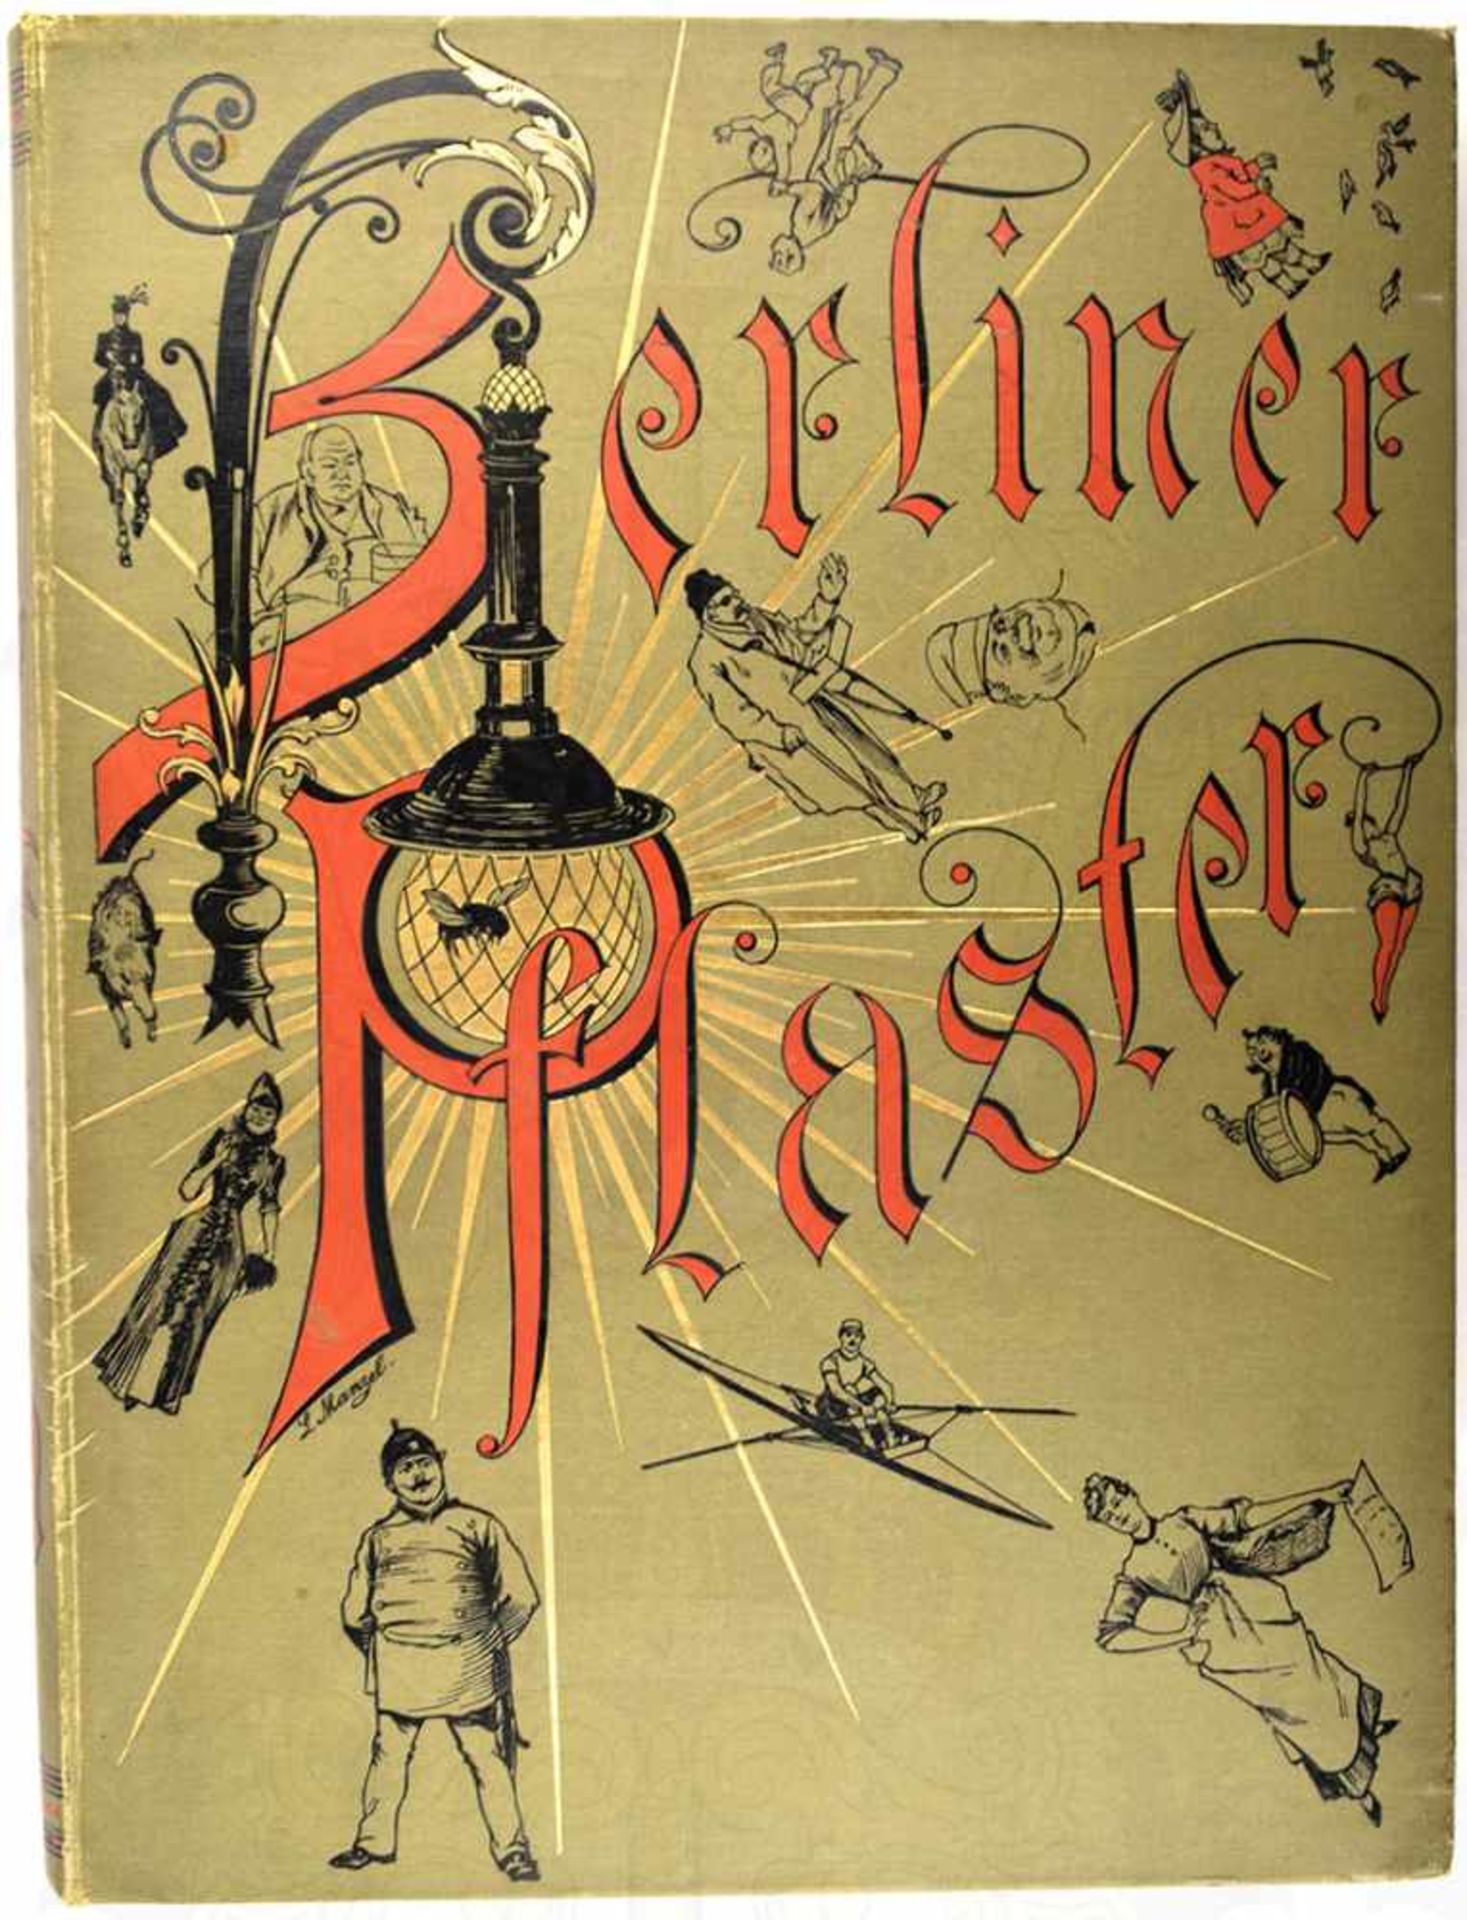 BERLINER PFLASTER, „Illustrierte Schilderungen aus dem Berliner Leben“, O. Reymond/C. Manzel, Verlag